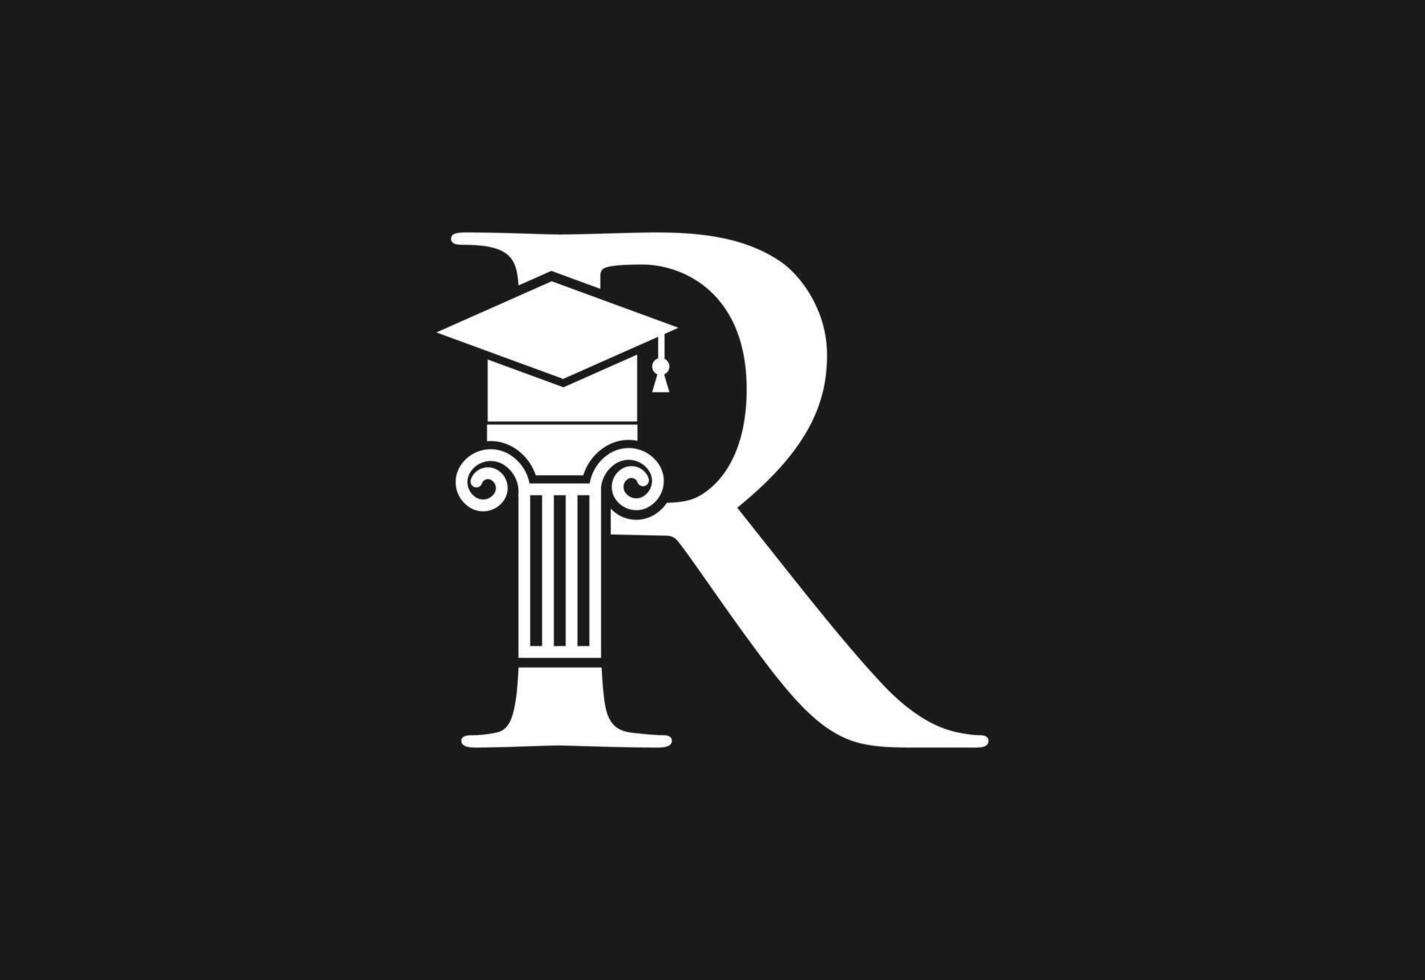 laag firma logo met laatste r vector sjabloon, gerechtigheid logo, gelijkwaardigheid, oordeel logo vector illustratie